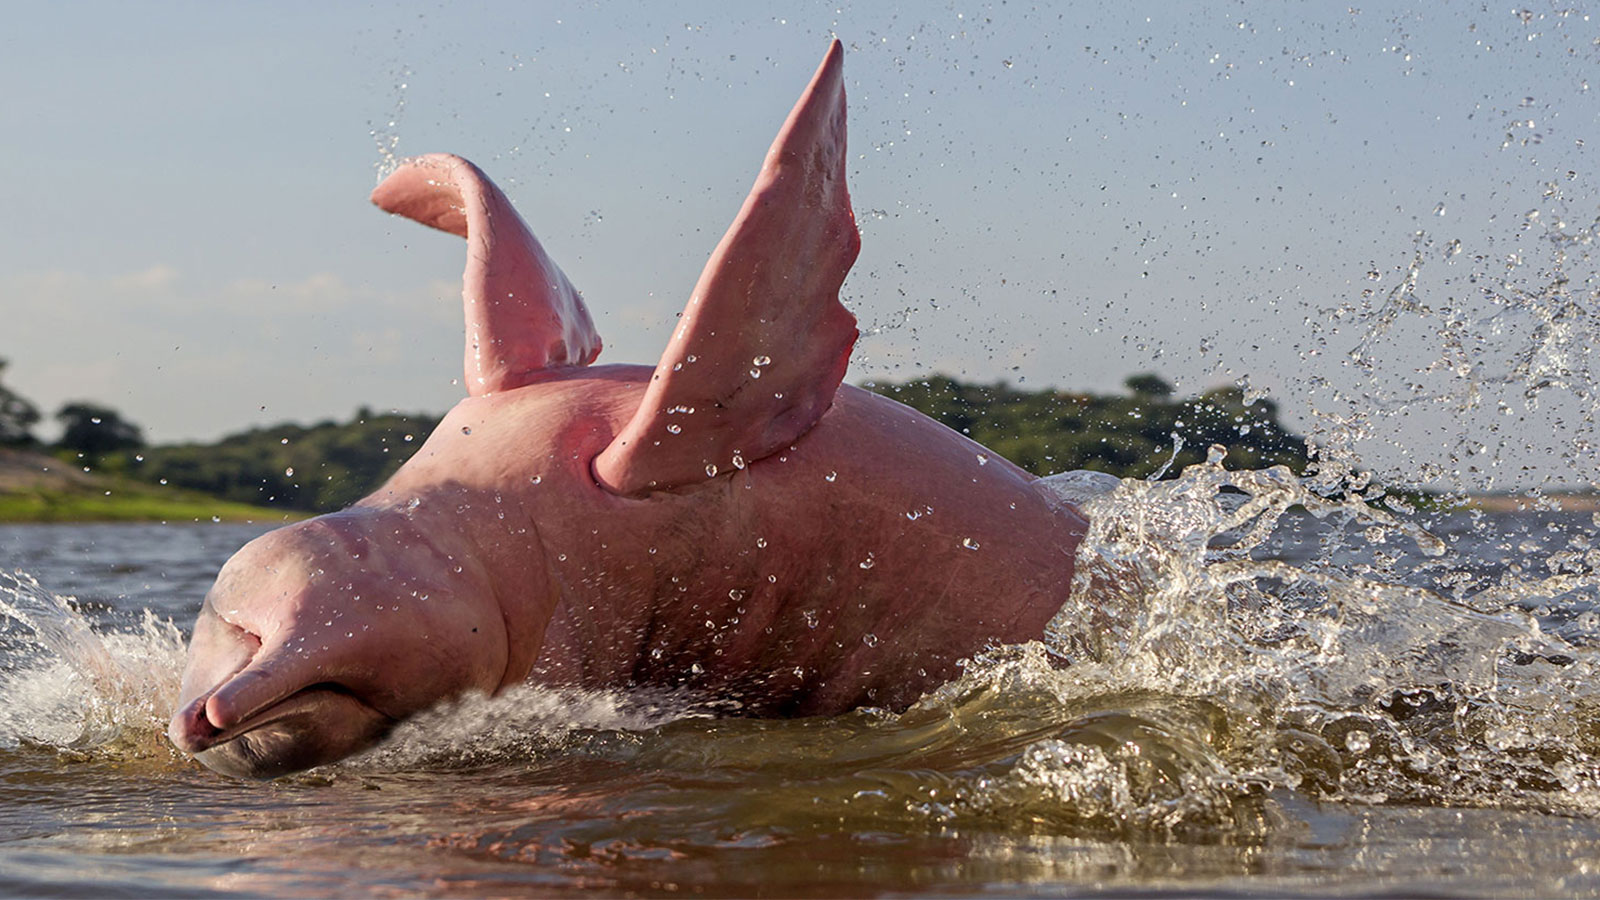 Tại sao cá heo sông Amazon có màu hồng?